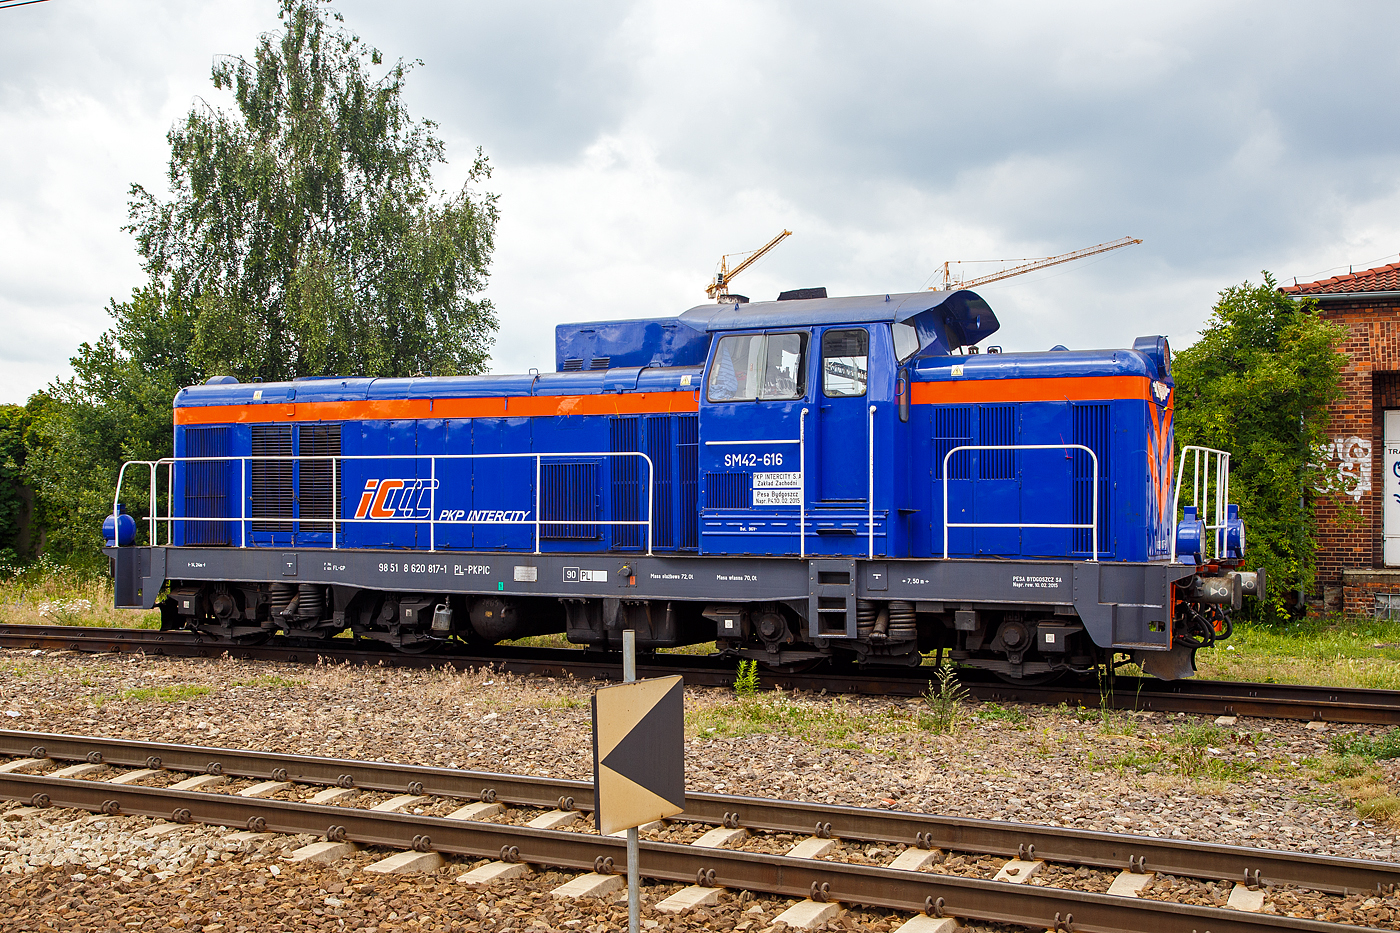 Die SM42-616 (98 51 8 620 817-1 PL PKPIC), eine Fablok 6Da (Typ Ls800E) der PKP Intercity, steht am 25 Juni 2017 beim Hauptbahnhof Posen (Poznań Głwny).

Die Lok wurde 1973 von FABLOK in Chrzanw unter der Fabriknummer 8772 gebaut.

Mit der Absicht veraltete Rangier- und Gterzugdampfloks zu ersetzen, lie die PKP (Polskie Koleje Państwowe, deutsch Polnische Staatsbahnen) eine Diesellok mittlerer Leistung als SM 42 entwickeln. Die Konstruktion war 1962 fertiggestellt, einen ersten Prototyp hatte Fablok in Chrzanw im Juni 1964 fertiggestellt. Der Antrieb der Lok erfolgte durch einen aufgeladenen HCP Achtzylinder-Dieselmotor vom Typ a8C22, welcher den Hauptgenerator vom Typ LSPA-740 antreibt, der wiederum die vier elektrischen Gleichstromfahrmotore speist.

Der Prototyp (die SM42-001) absolvierte zunchst umfangreiche Probeeinstze. Zwei weitere Maschinen (SM42-002 und 003) mit sehr geringfgigen nderungen folgten im Mrz 1965. Weitere 20 Loks wurden noch im gleichen Jahr geliefert. Die eigentliche Serienproduktion begann 1967 und endete erst 1993 nach 1.856 Loks, davon gingen allein 1.153 Maschinen an die PKP. 

Angesichts des langen Produktionszeitraumes gab es nur wenige nderungen. Die wichtigste ist der Ersatz der LSa-430 Fahrmotoren durch die vom Typ LSF-430 an der SM42-521. Zwar ist die SM42 keine besonders fortschrittliche Lok, doch erwies sie sich als solide und erfolgreiche Konstruktion.

Heute gibt es noch weitere Varianten (SP42 und SU42) sowie Modernisierungen (6Dg, 6Dk), aber die hier ist eine SM42 bzw. Fablok 6Da, Model Ls800E.

TECHNISCHE DATEN: 
Spurweite: 1.435 mm (Normalspur)
Achsanordnung: BoBo
Lnge ber Puffer 14.240 mm
Drehzapfenabstand: 7.500 mm
Achsabstand im Drehgestell: 2.600 mm
Breite: 3.173 mm
Hhe: 4.400 mm 
Treibraddurchmesser  (neu): 1.100 mm
Dienstgewicht: 72 t
Tankinhalt: 2.815 l 
Motor: HCP Achtzylinder-Dieselmotor vom Typ a8C22
Nennleistung: 588 kW (800 PS) 
Nenndrehzahl: 1000 1/min 
Gewicht des Motors: 8.800 kg
Hauptgenerator Typ: LSPA-740
Gewicht des Hauptgenerators: 4.350 kg
Hilfsgenerator Typ: LSPF-280
Traktionsmotore: 4 Stck LSF-430  173 kW
Anfahrzugkraft: 219 kN 
Dauerzugkraft: 112 kN
Leistungsbertragung: diesel-elektrisch
Hchstgeschwindigkeit: 90 km/h
Kleinste Dauergeschwindigkeit: 13 km/h
Maximale Achslast:  17,5 t
Kleinster befahrbarer Gleisbogen: R=50m
Bremsanlage: Oerlikon
